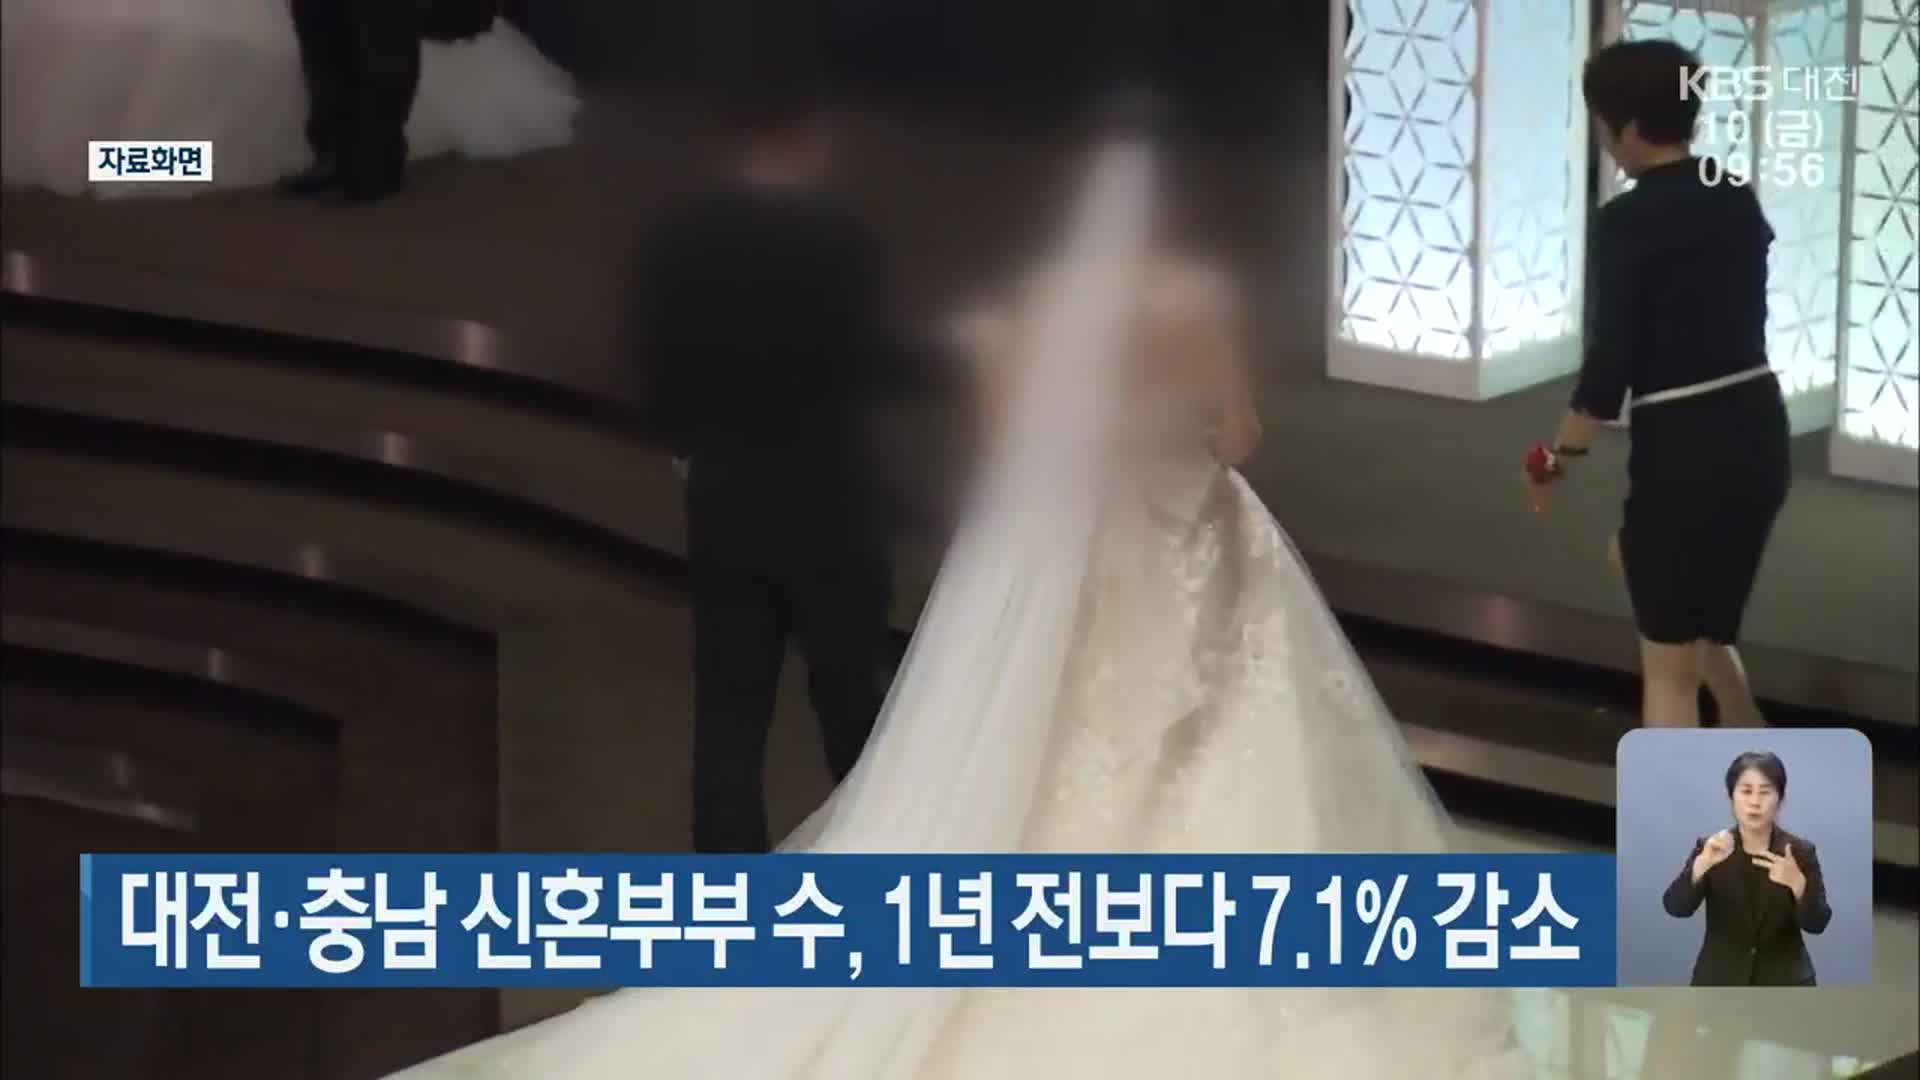 대전·충남 신혼부부 수, 1년 전보다 7.1% 감소